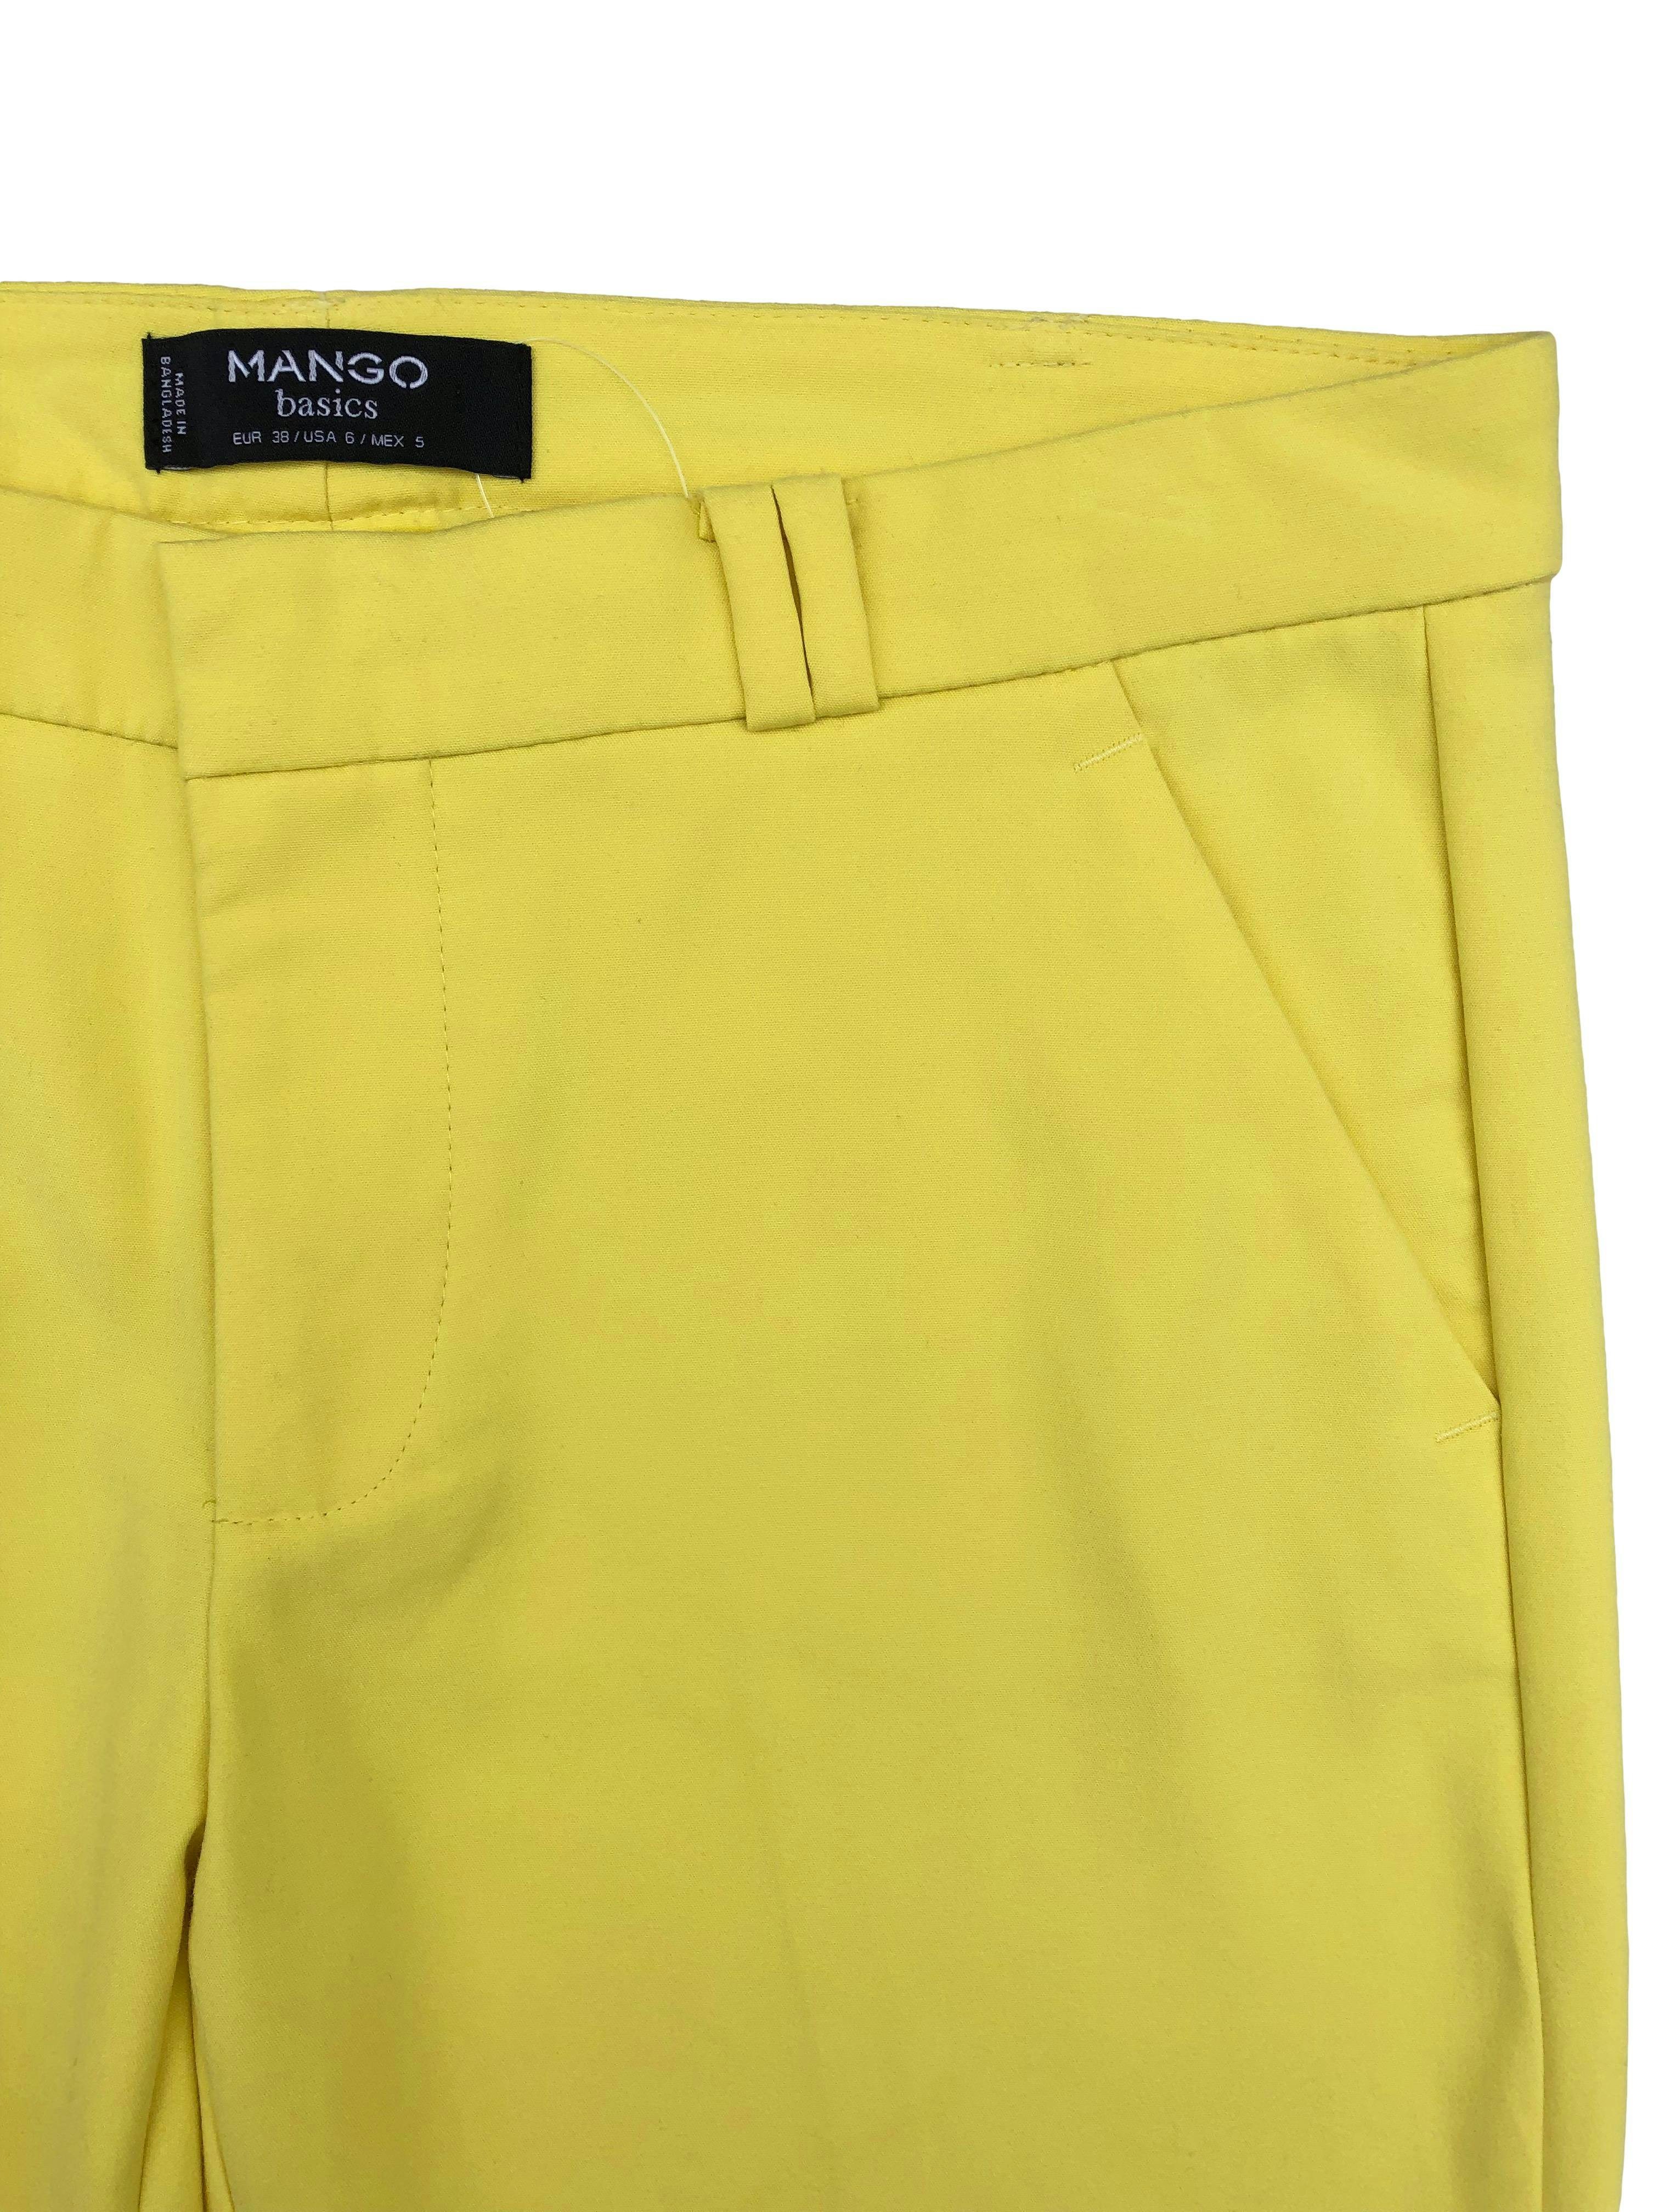 Pantalón de vestir Mango amarillo de corte slim con bolsillos frontales y bolsillos decorativos posteriores. Cintura 82cm, Tiro 21cm, Largo 90cm.